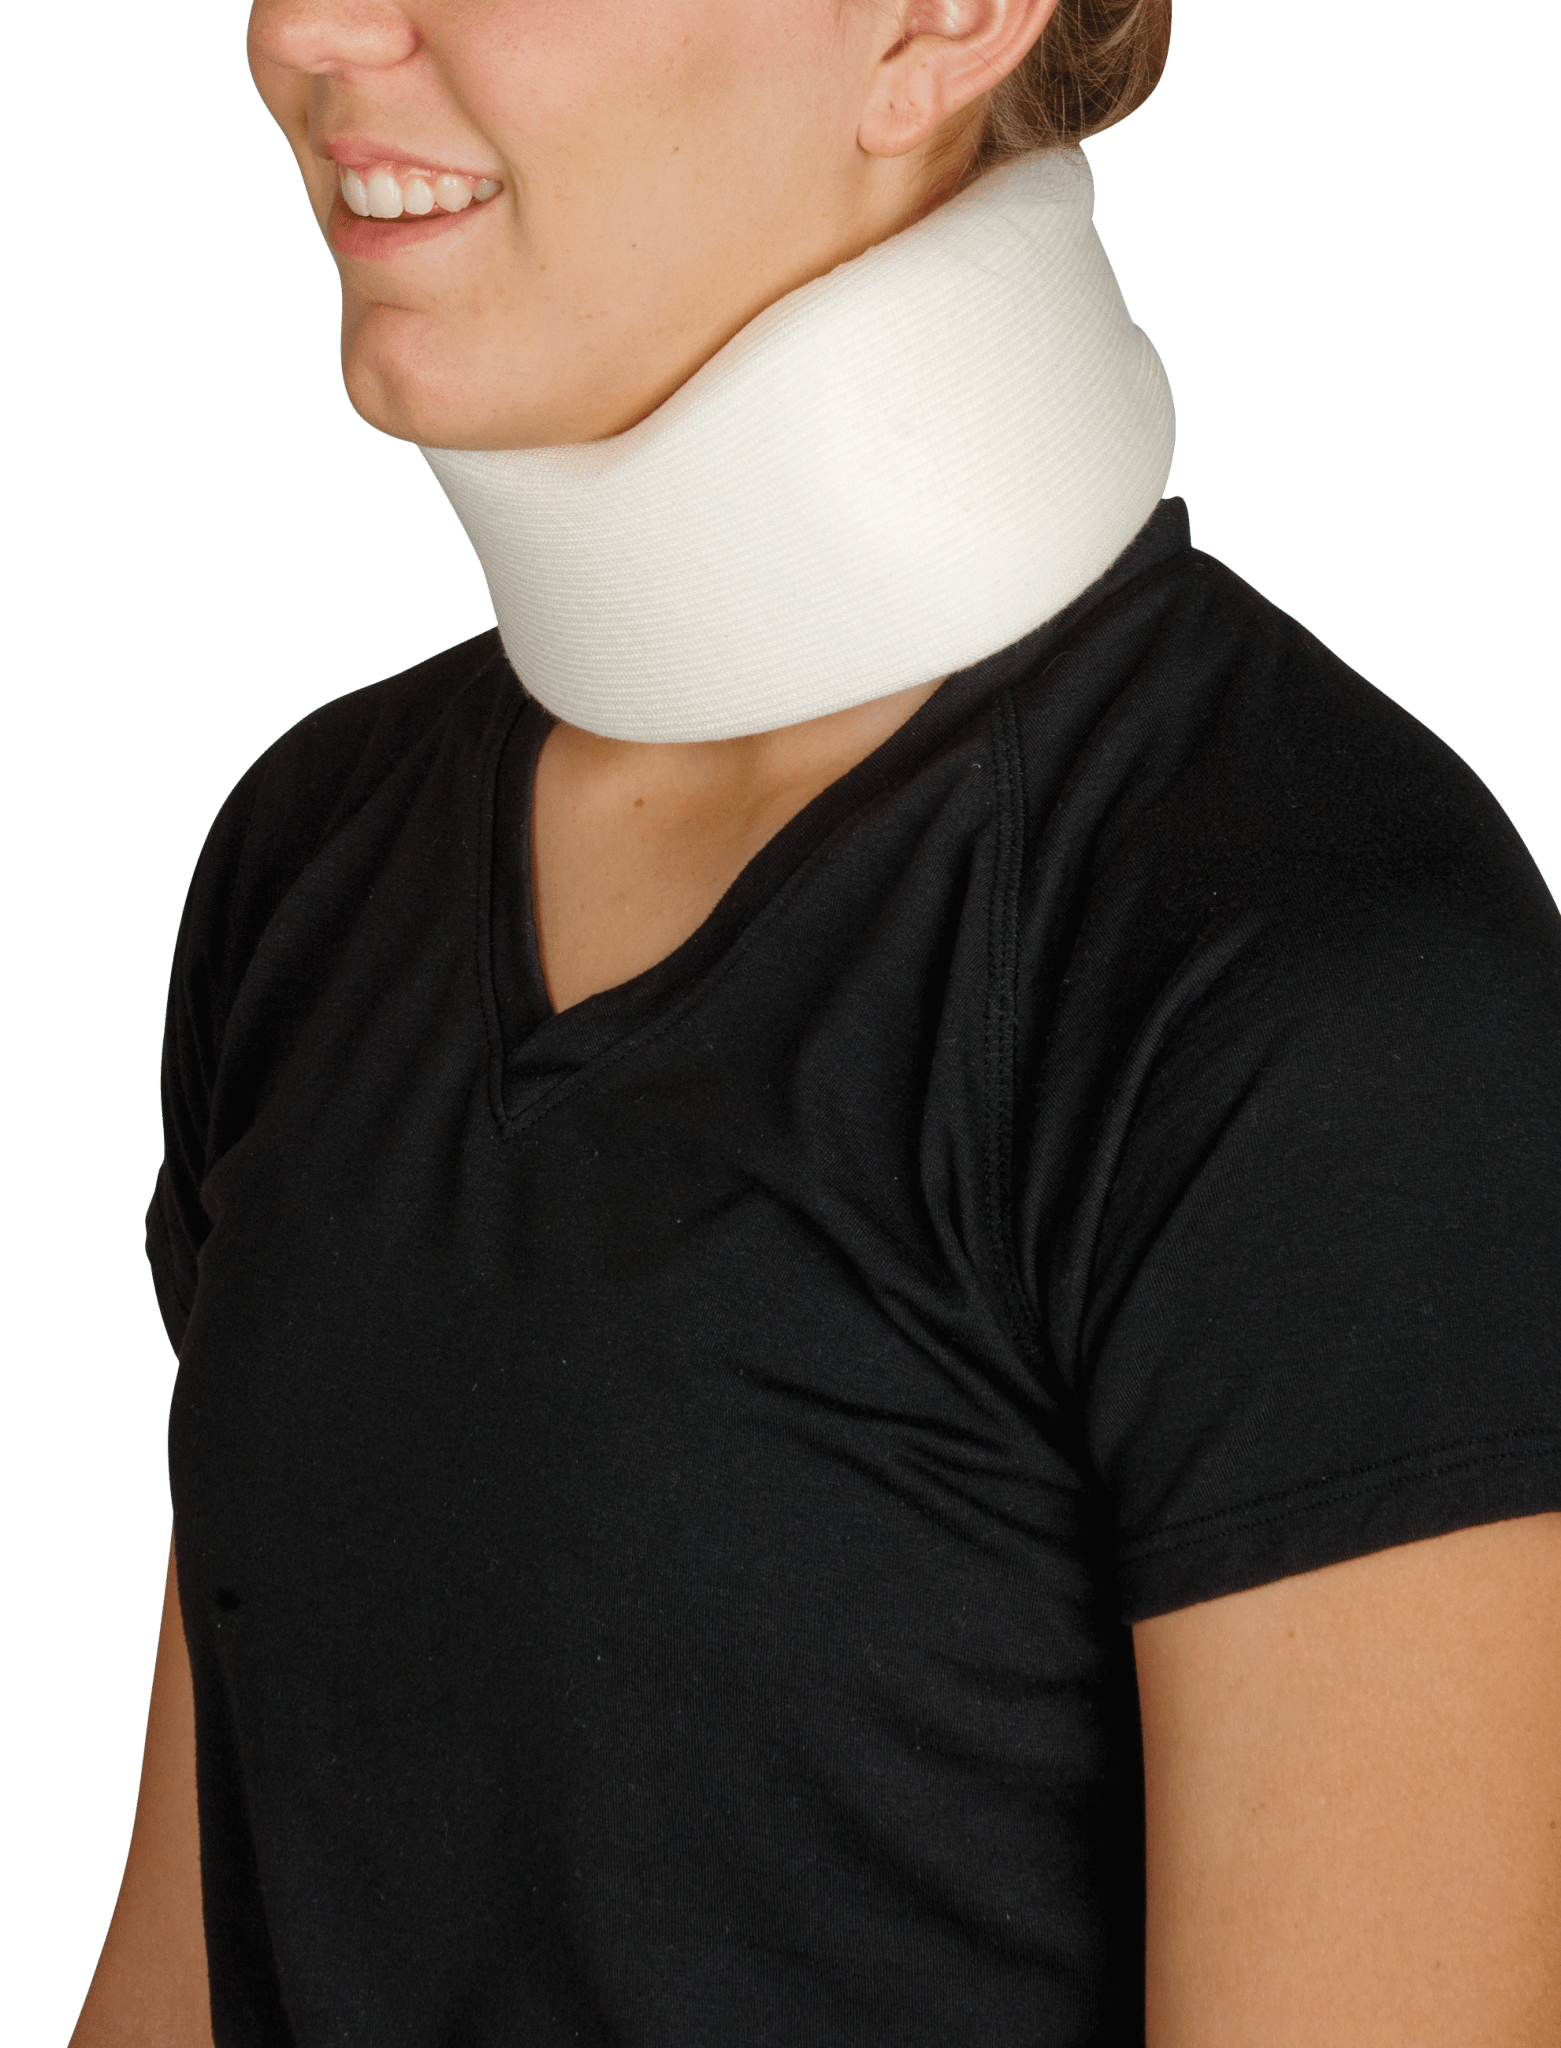 EA/1 - Leader Cervical Collar, 2-1/2" - Best Buy Medical Supplies